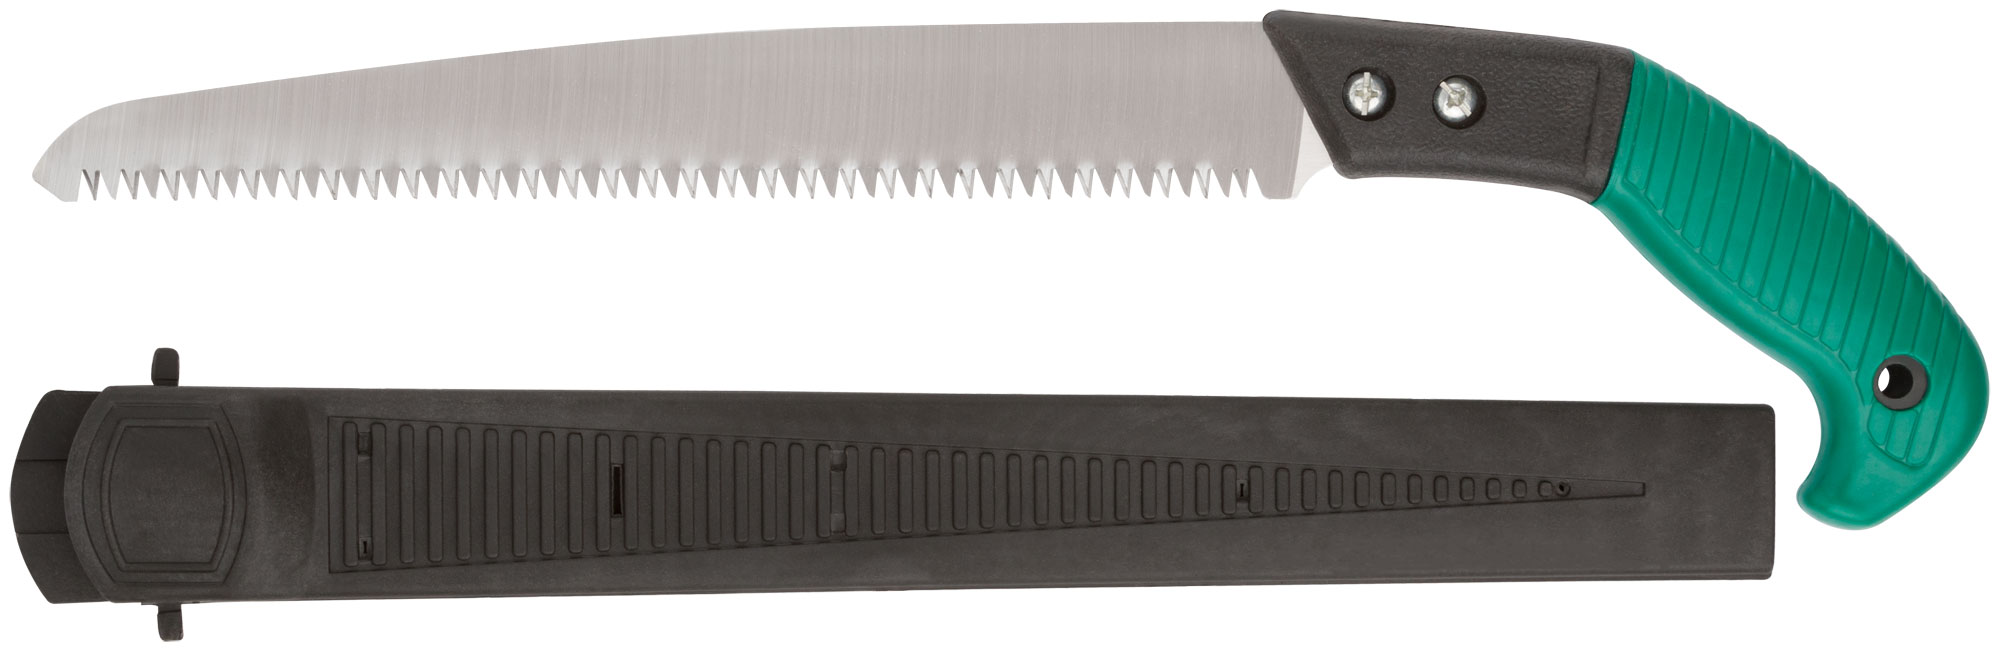 Ножовка садовая с ножнами, 300 мм, FIT 40595 ножовка садовая 270 мм пластиковая ручка